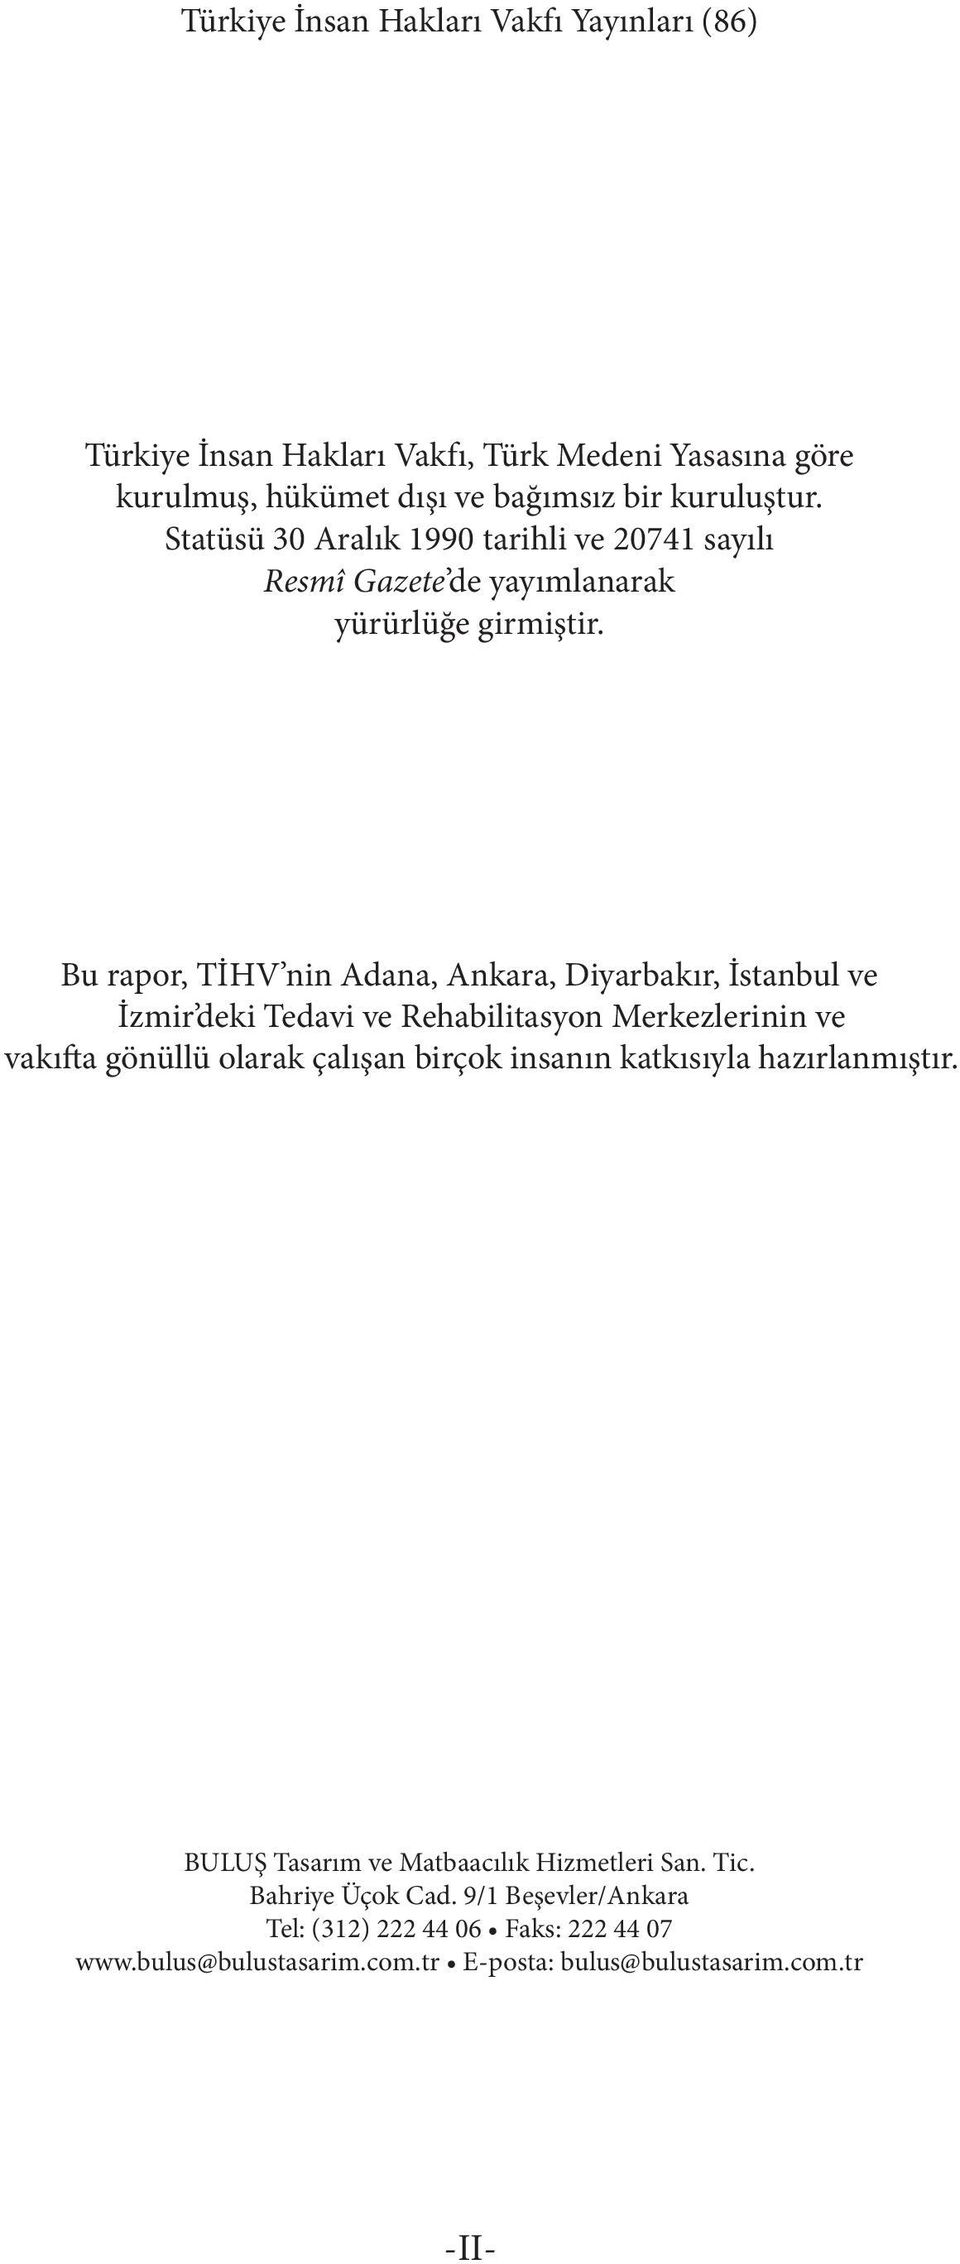 Bu rapor, TİHV nin Adana, Ankara, Diyarbakır, İstanbul ve İzmir deki Tedavi ve Rehabilitasyon Merkezlerinin ve vakıfta gönüllü olarak çalışan birçok